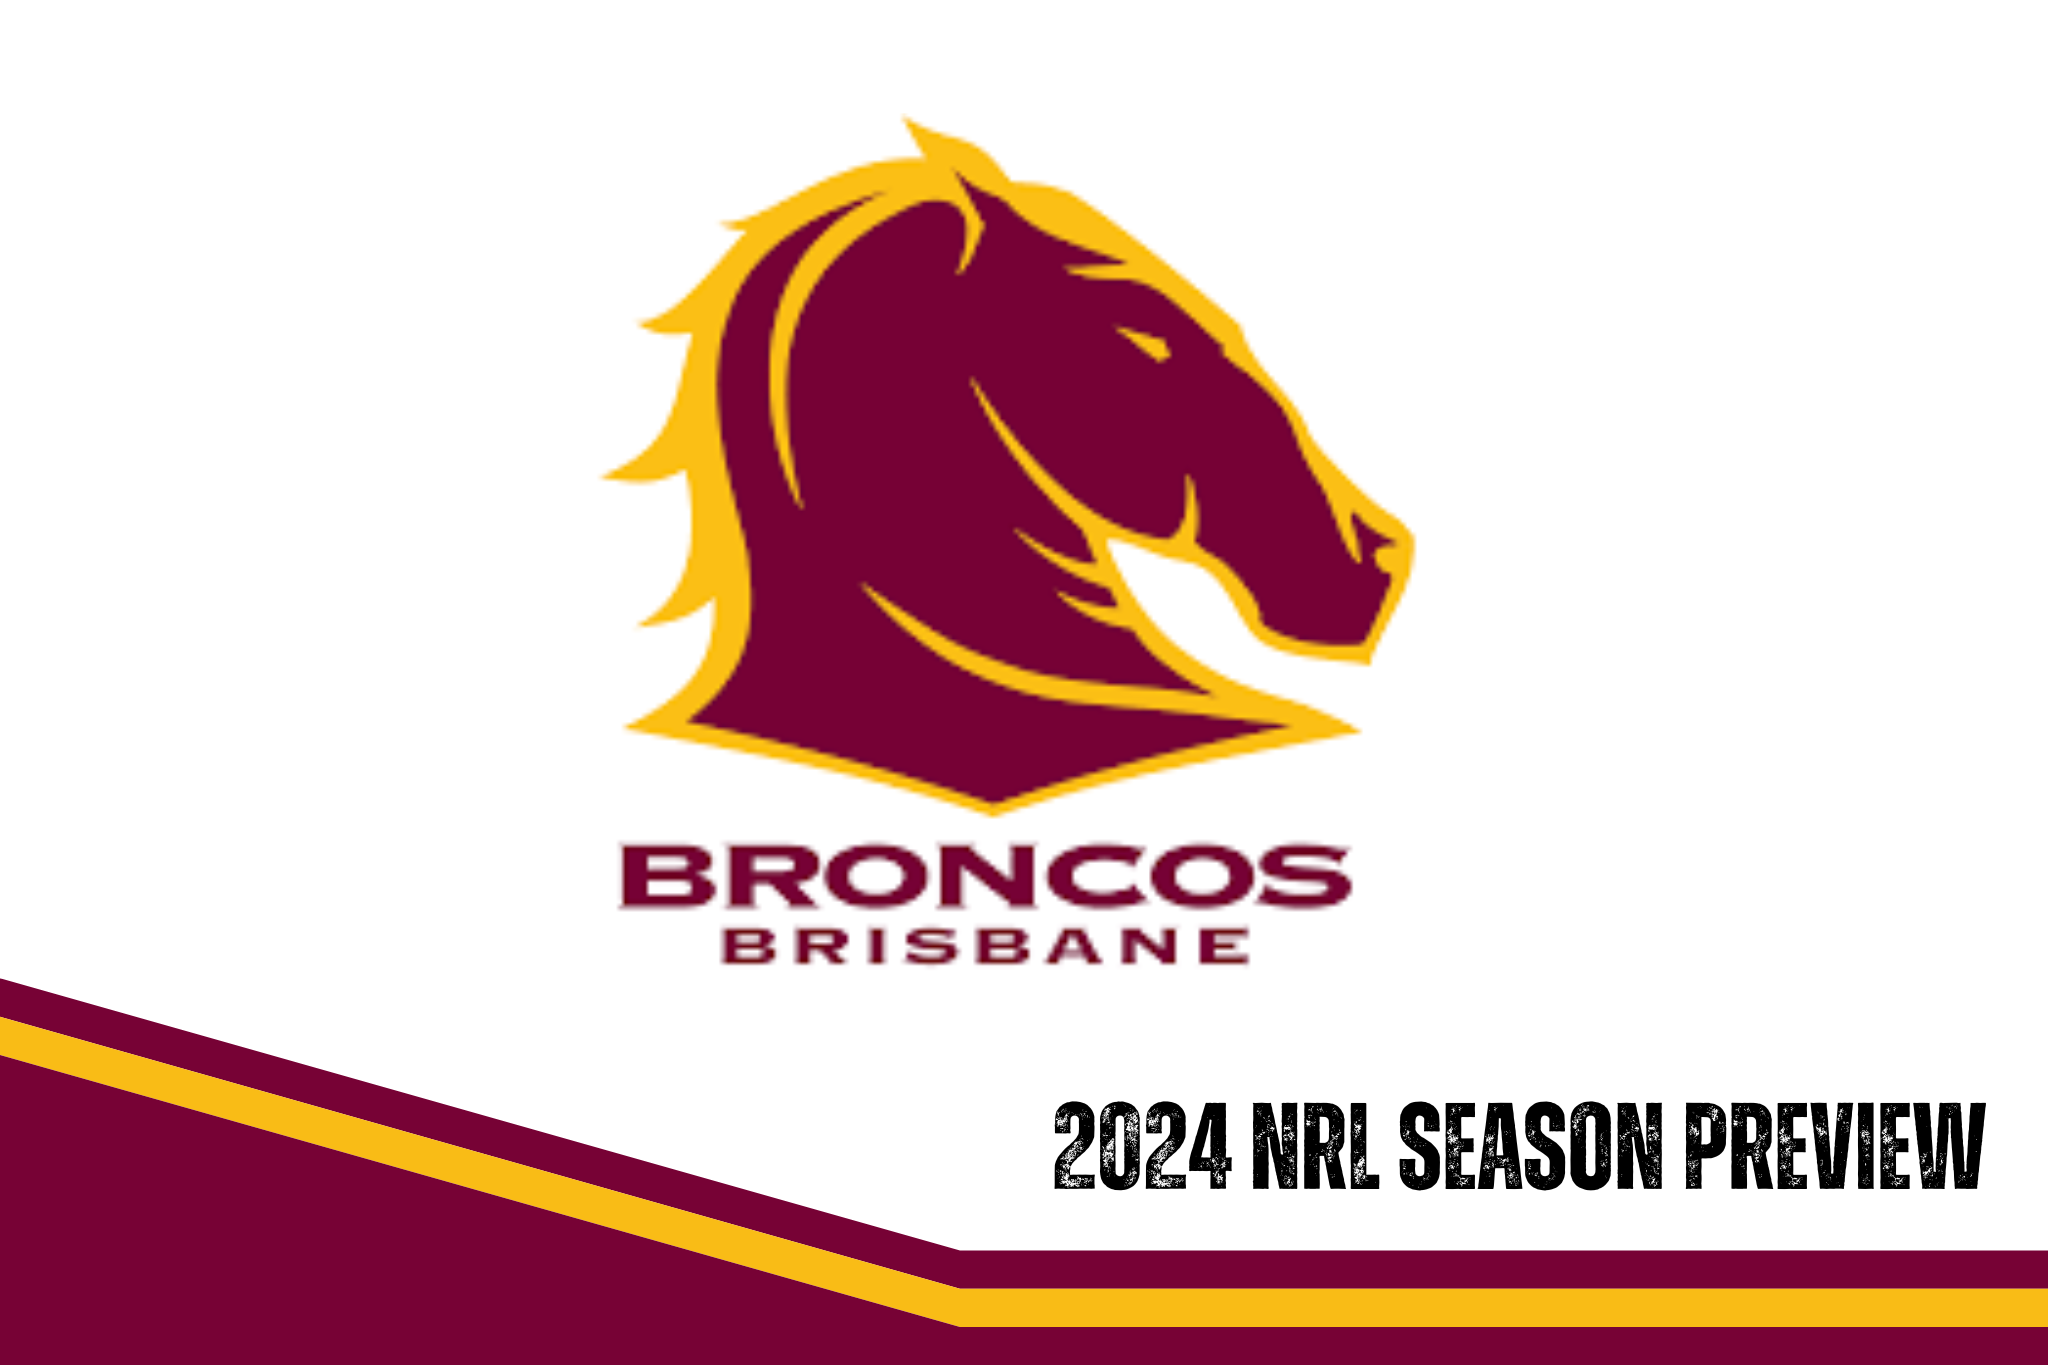 Brisbane Broncos 2024 season preview